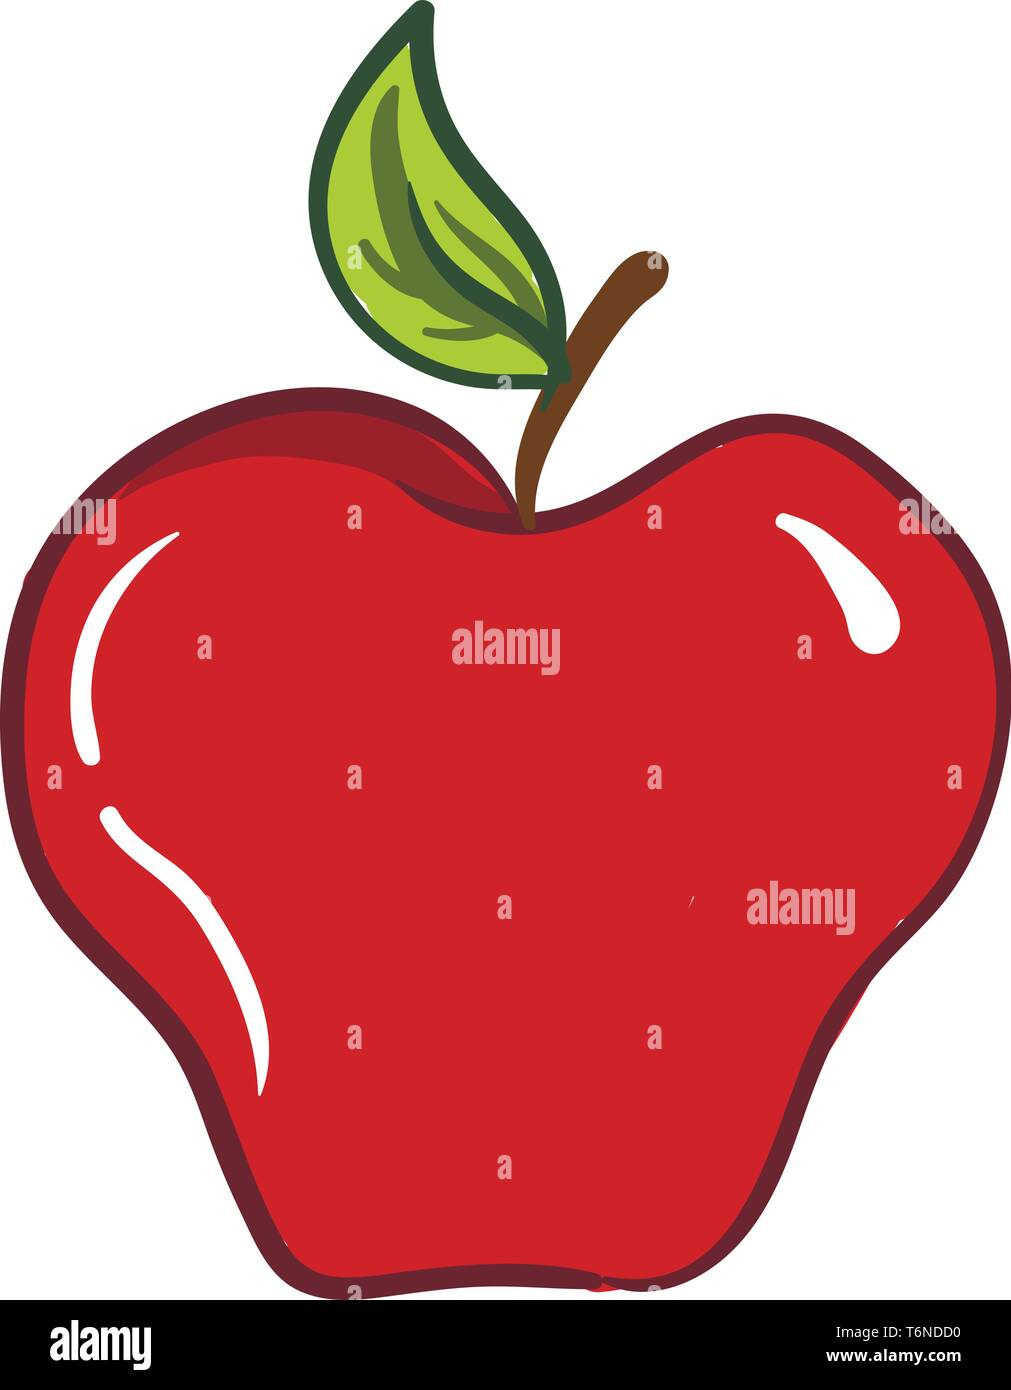 D'un clipart et doux de couleur rouge comestible fruits apple avec une petite tige brune une feuille de couleur verte et de quelques points d'exclamation de couleur blanche vector Illustration de Vecteur